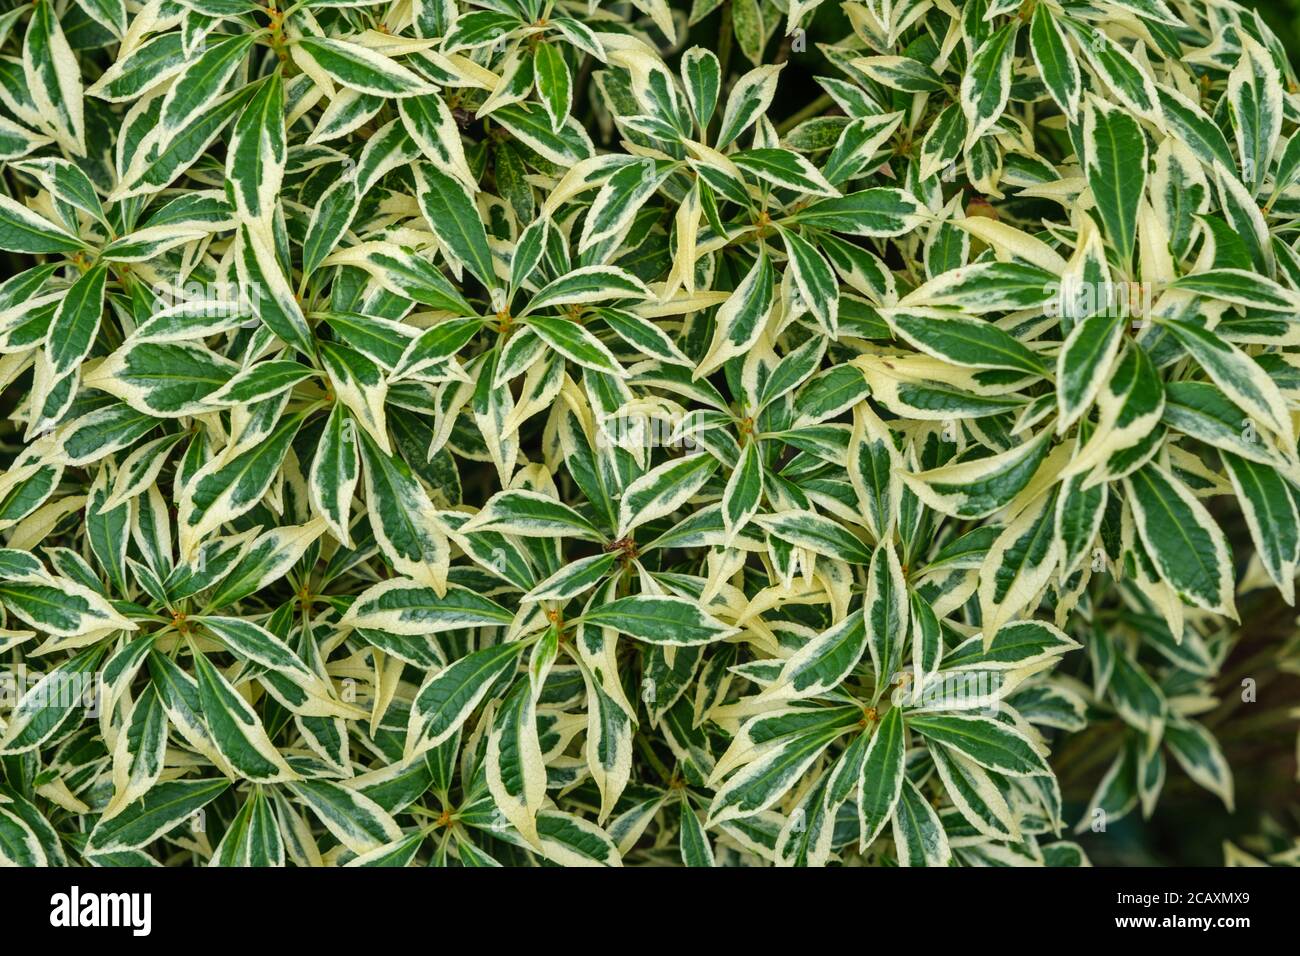 Pieris japonica 'Variegata' Stock Photo